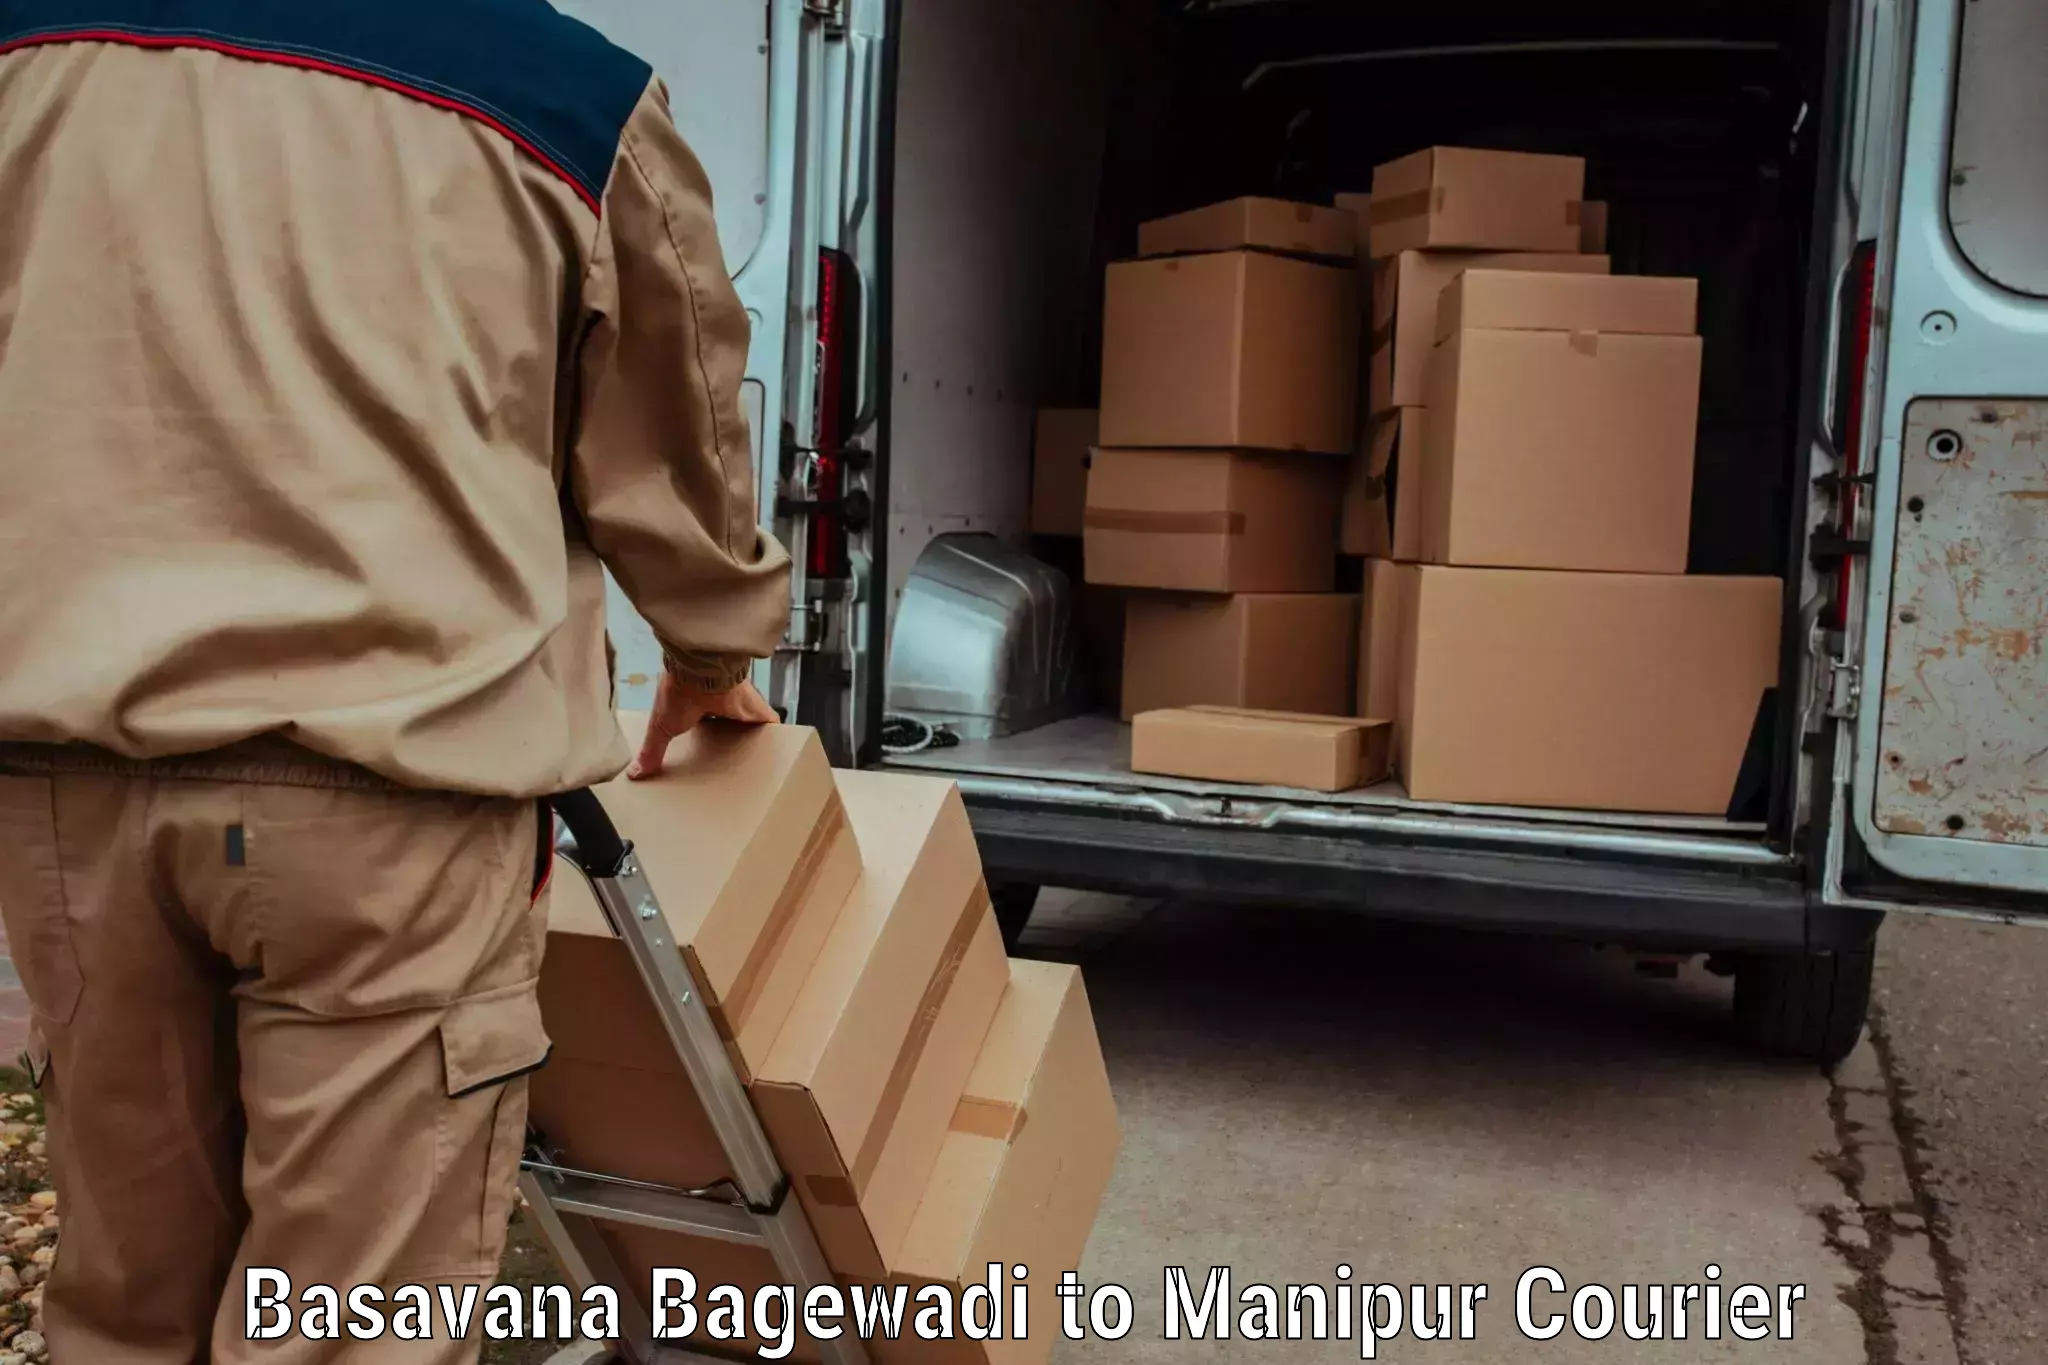 Next-generation courier services Basavana Bagewadi to Kakching